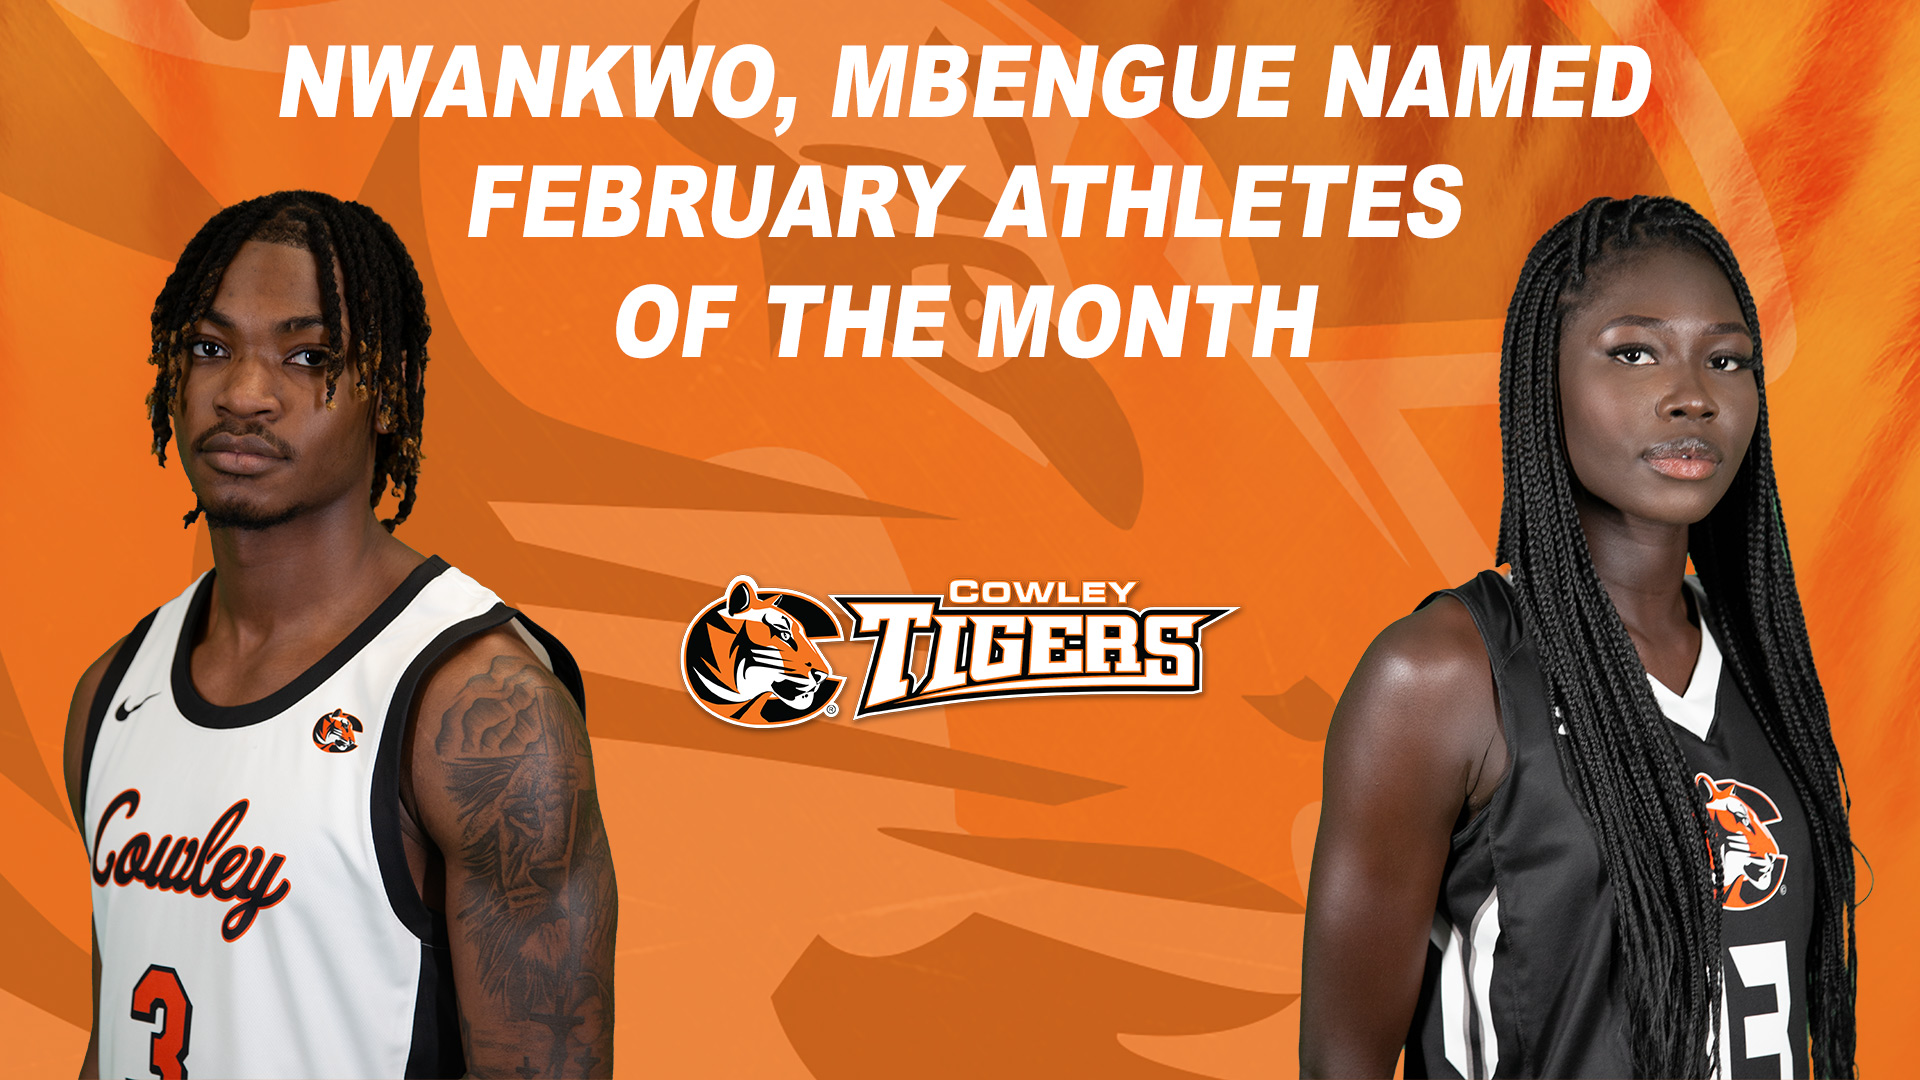 Nwankwo, Mbengue named February Athletes of the Month